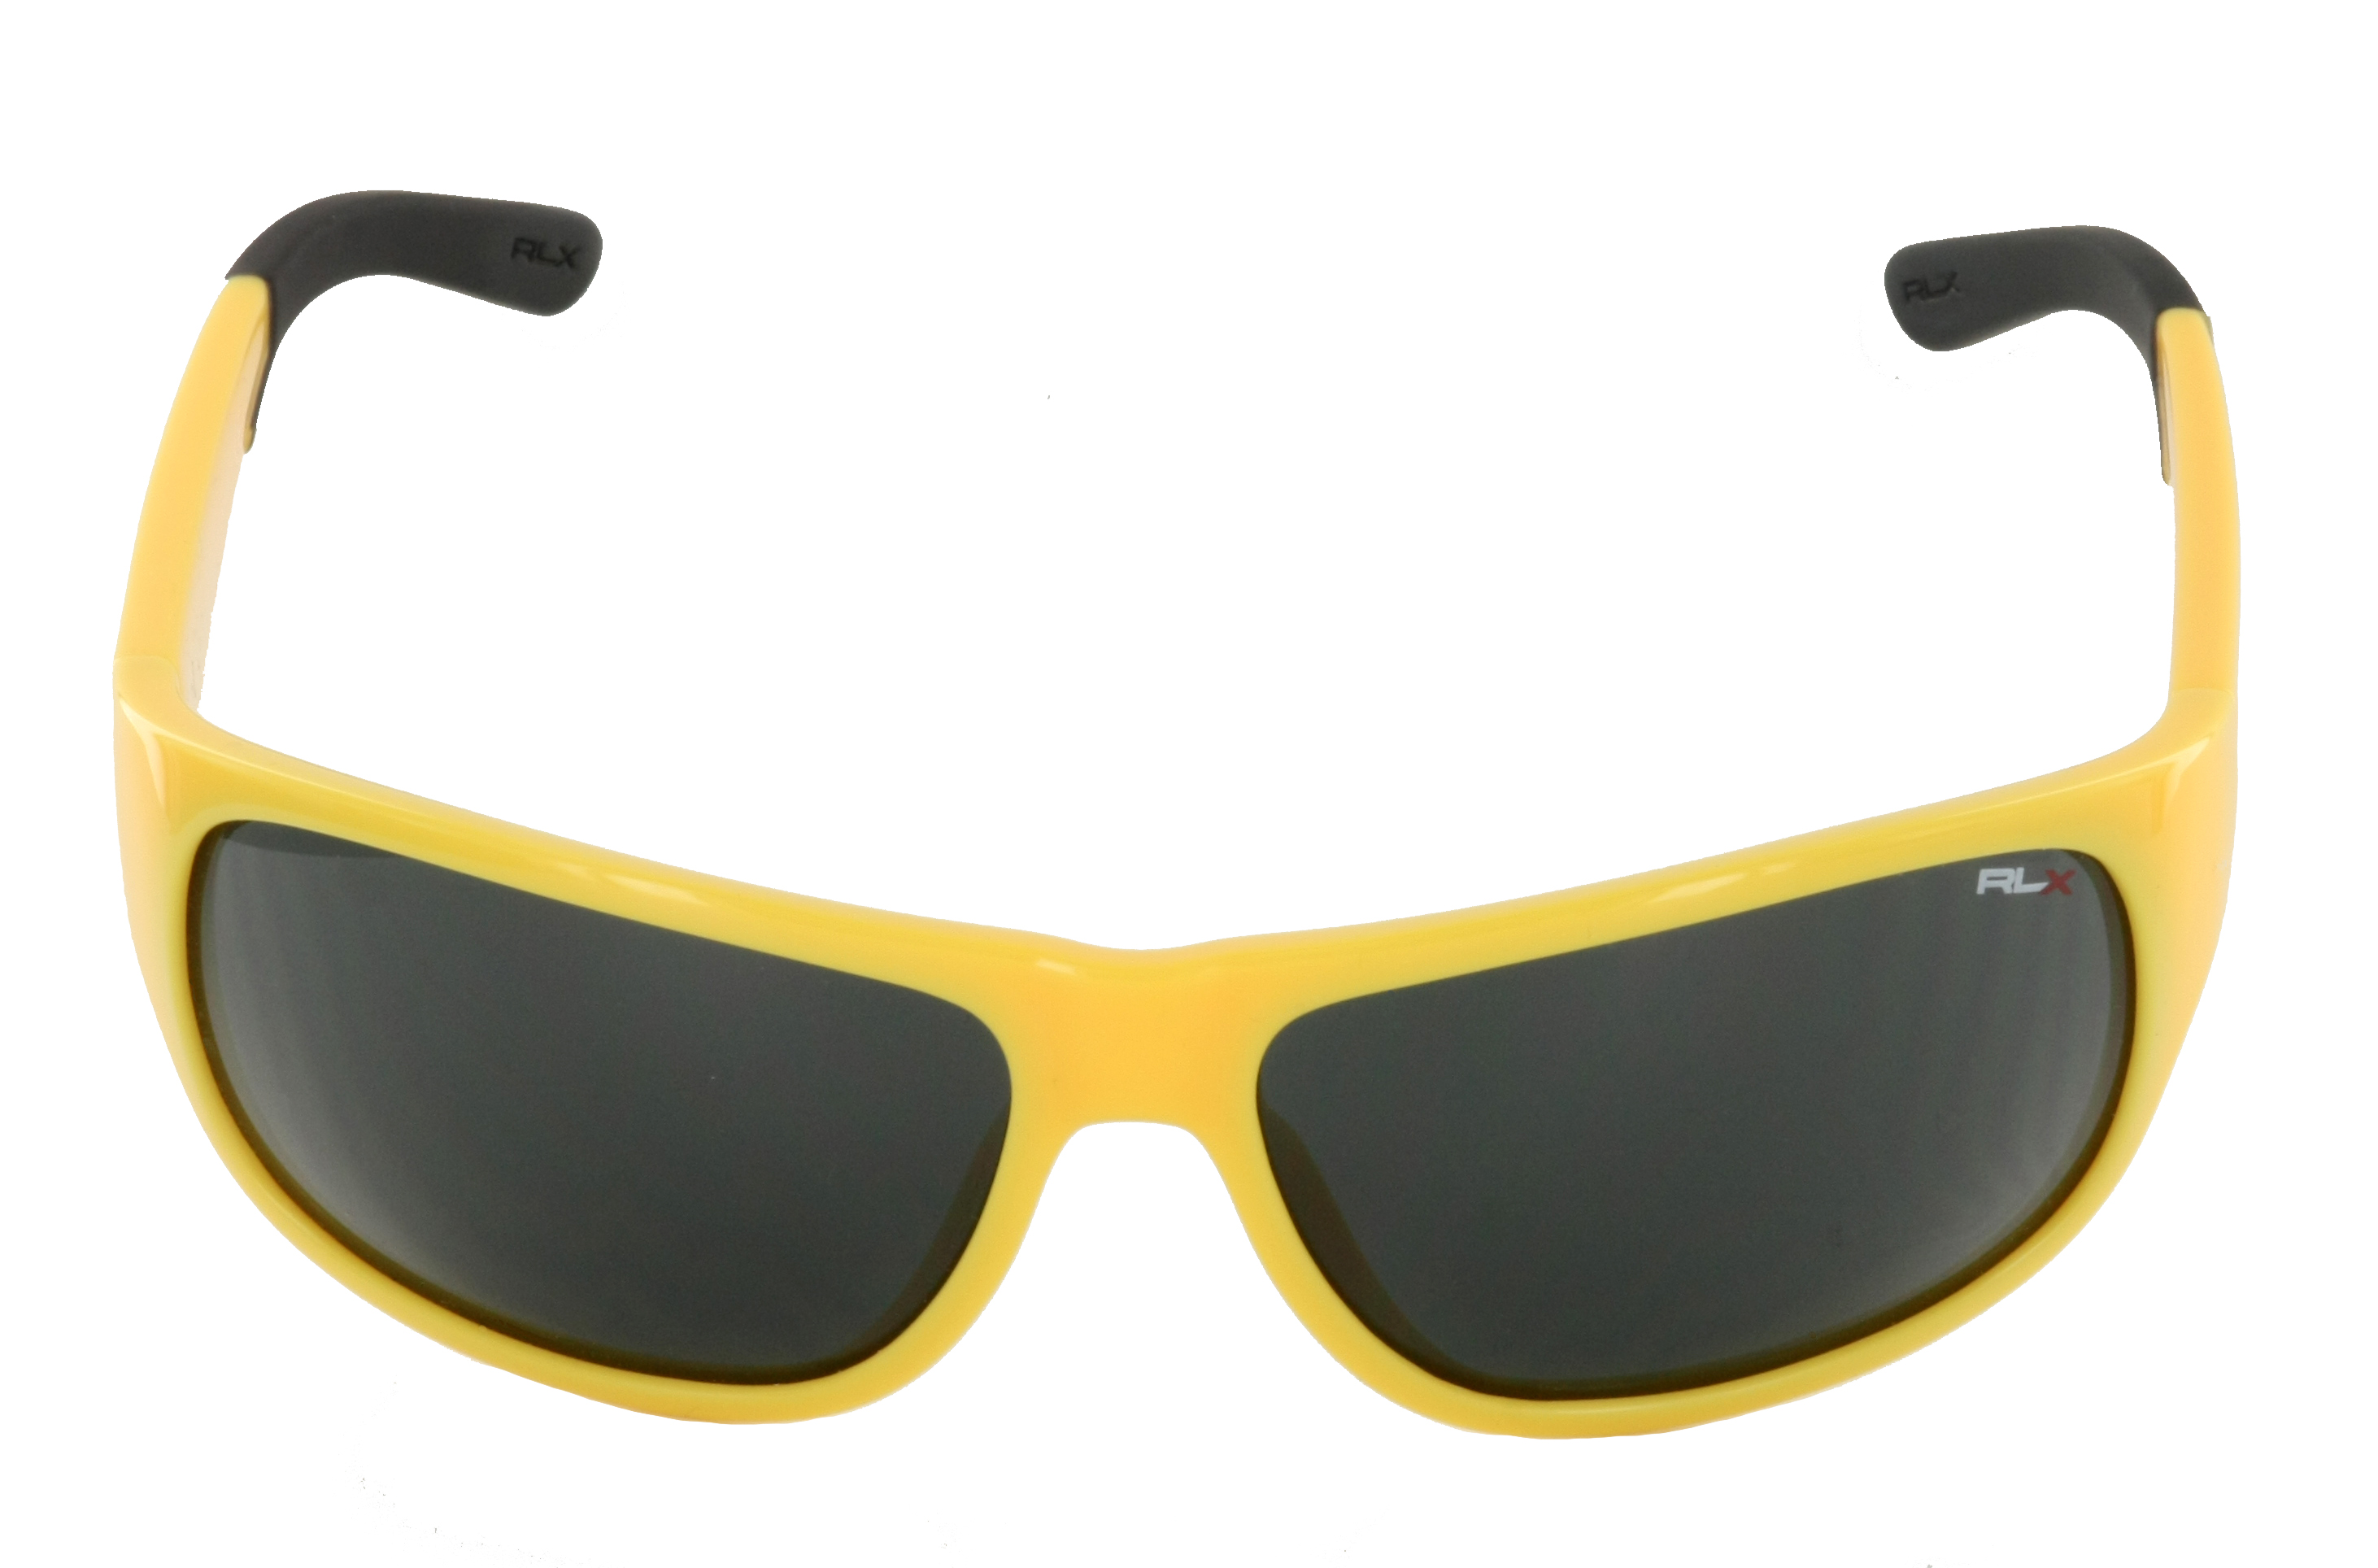 Polo Ralph Lauren RLX Sport Sonnenbrille gelb schwarz 510787 Size 64